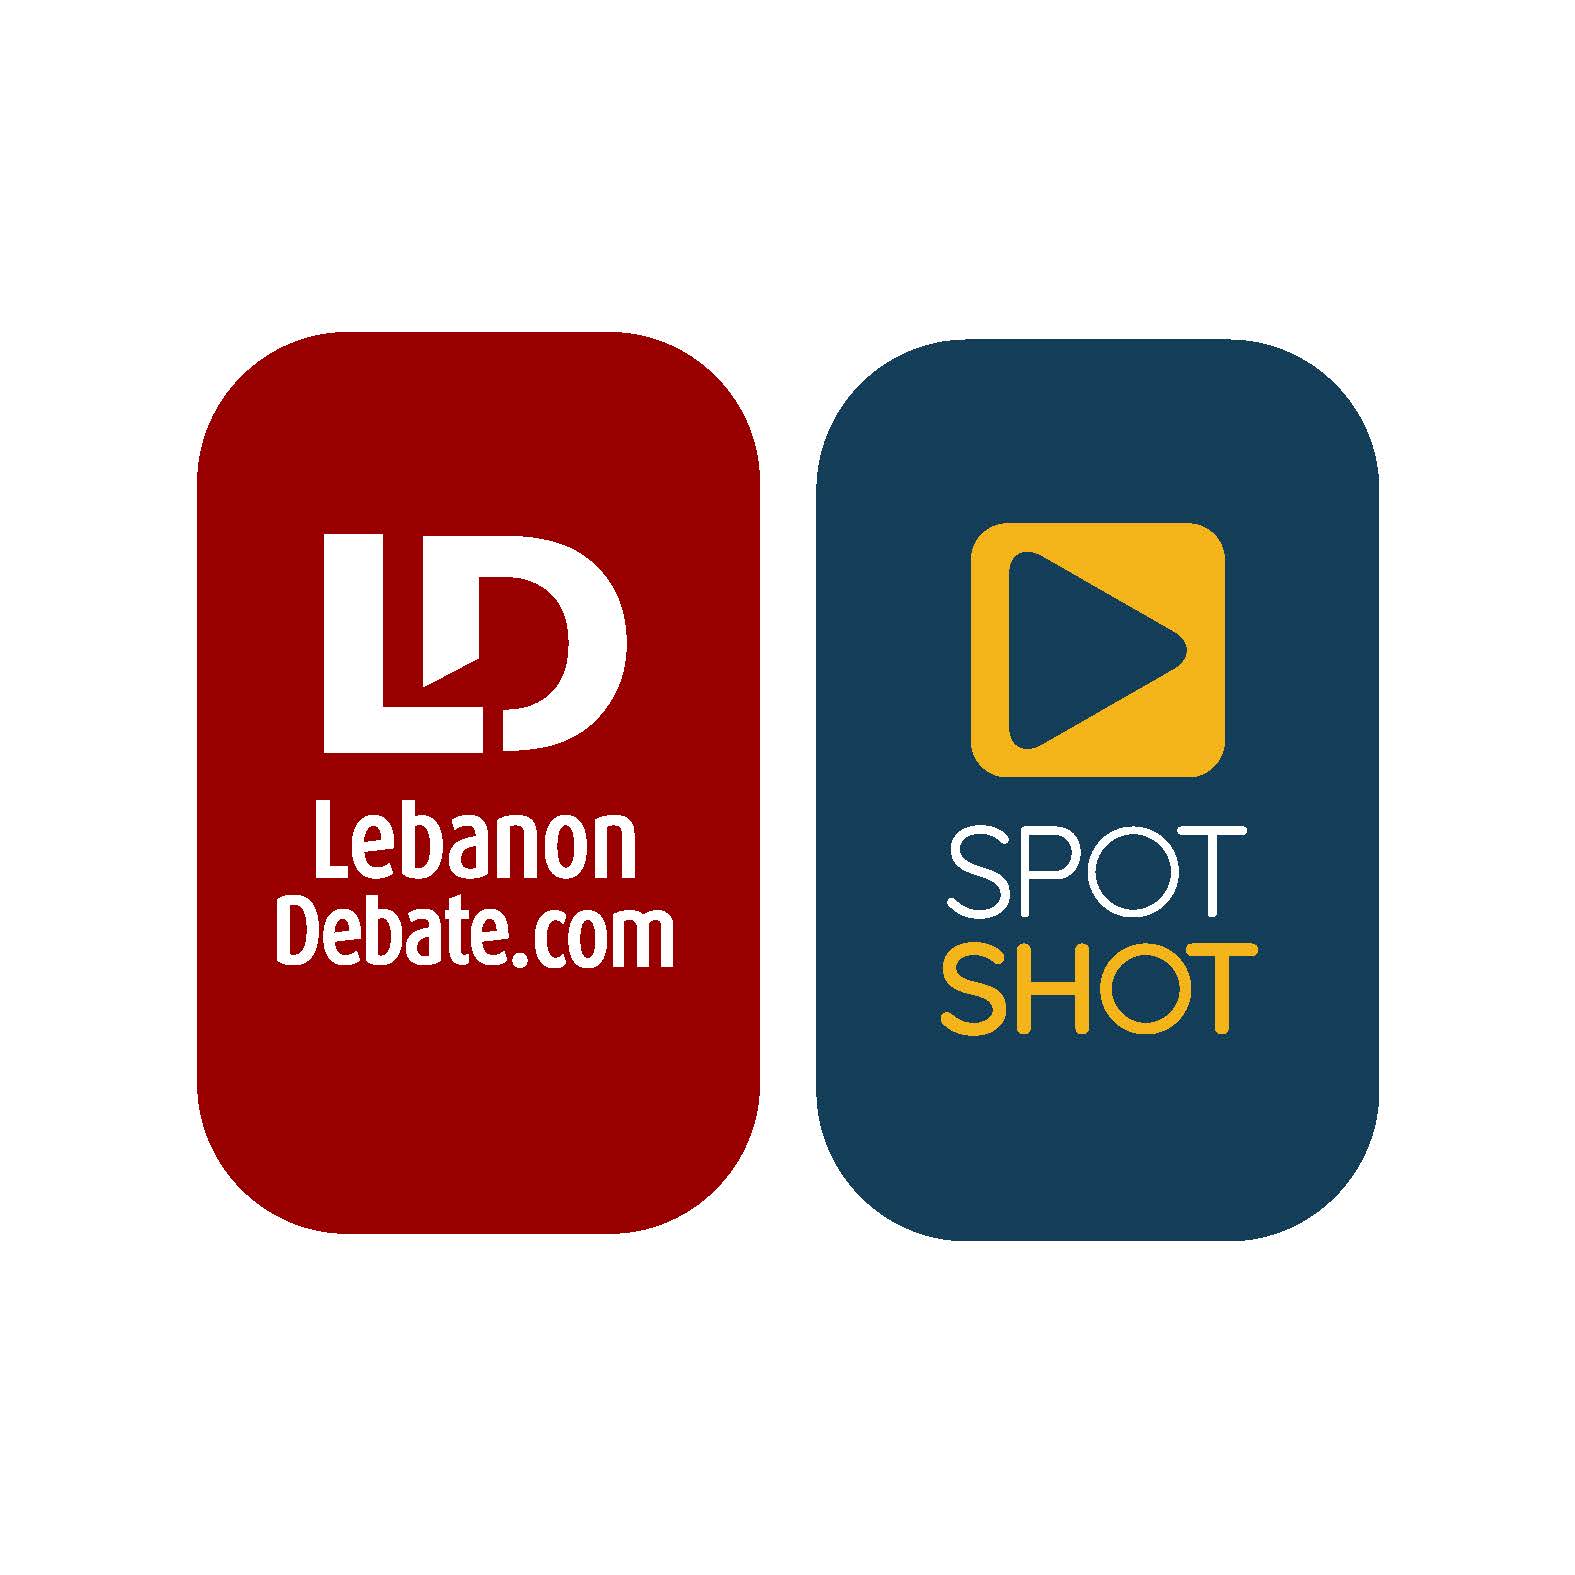 Ldebate and Spotshot